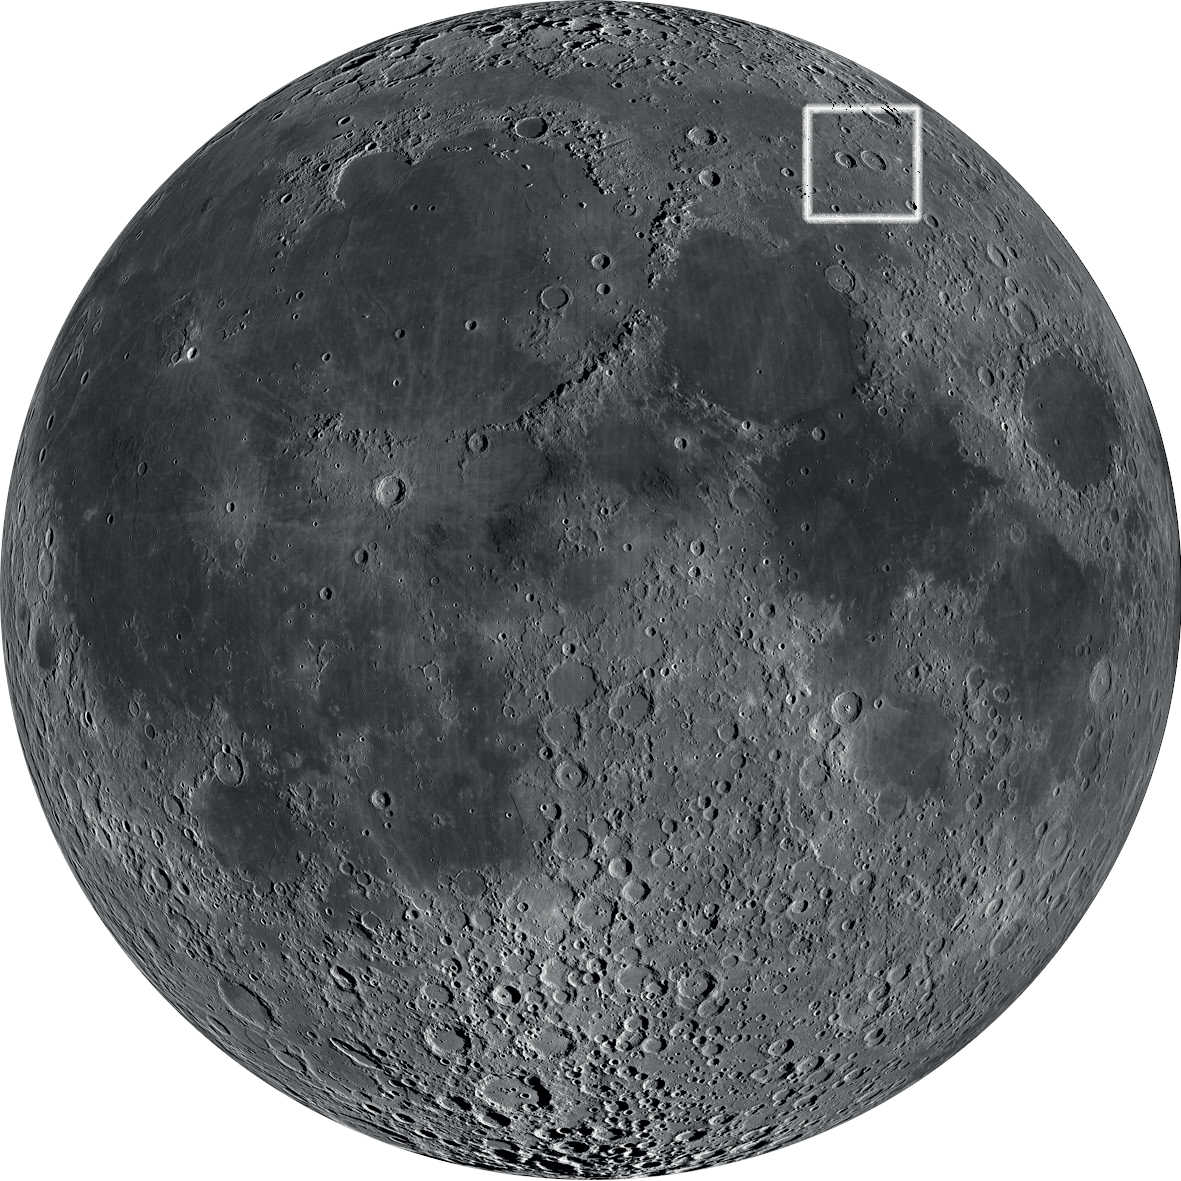 Atrakcyjna para kraterów leżąca w północno-wschodniej ćwiartce Księżyca. NASA/GSFC/Arizona State University